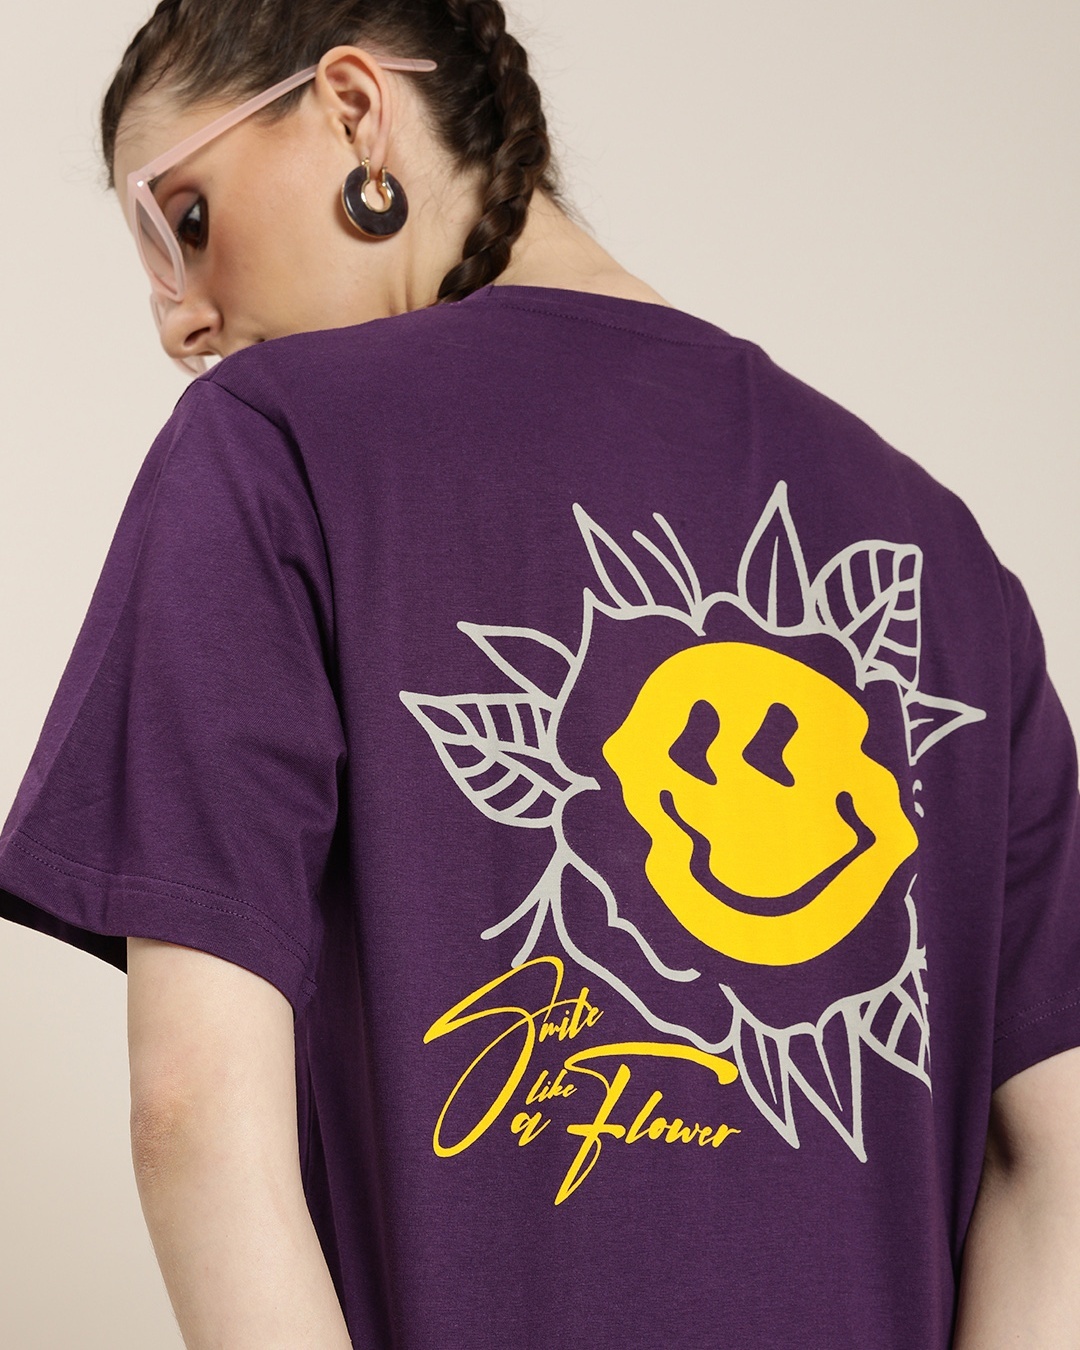 Buy Womens Purple Graphic Printed Oversized T Shirt Online At Bewakoof 4801